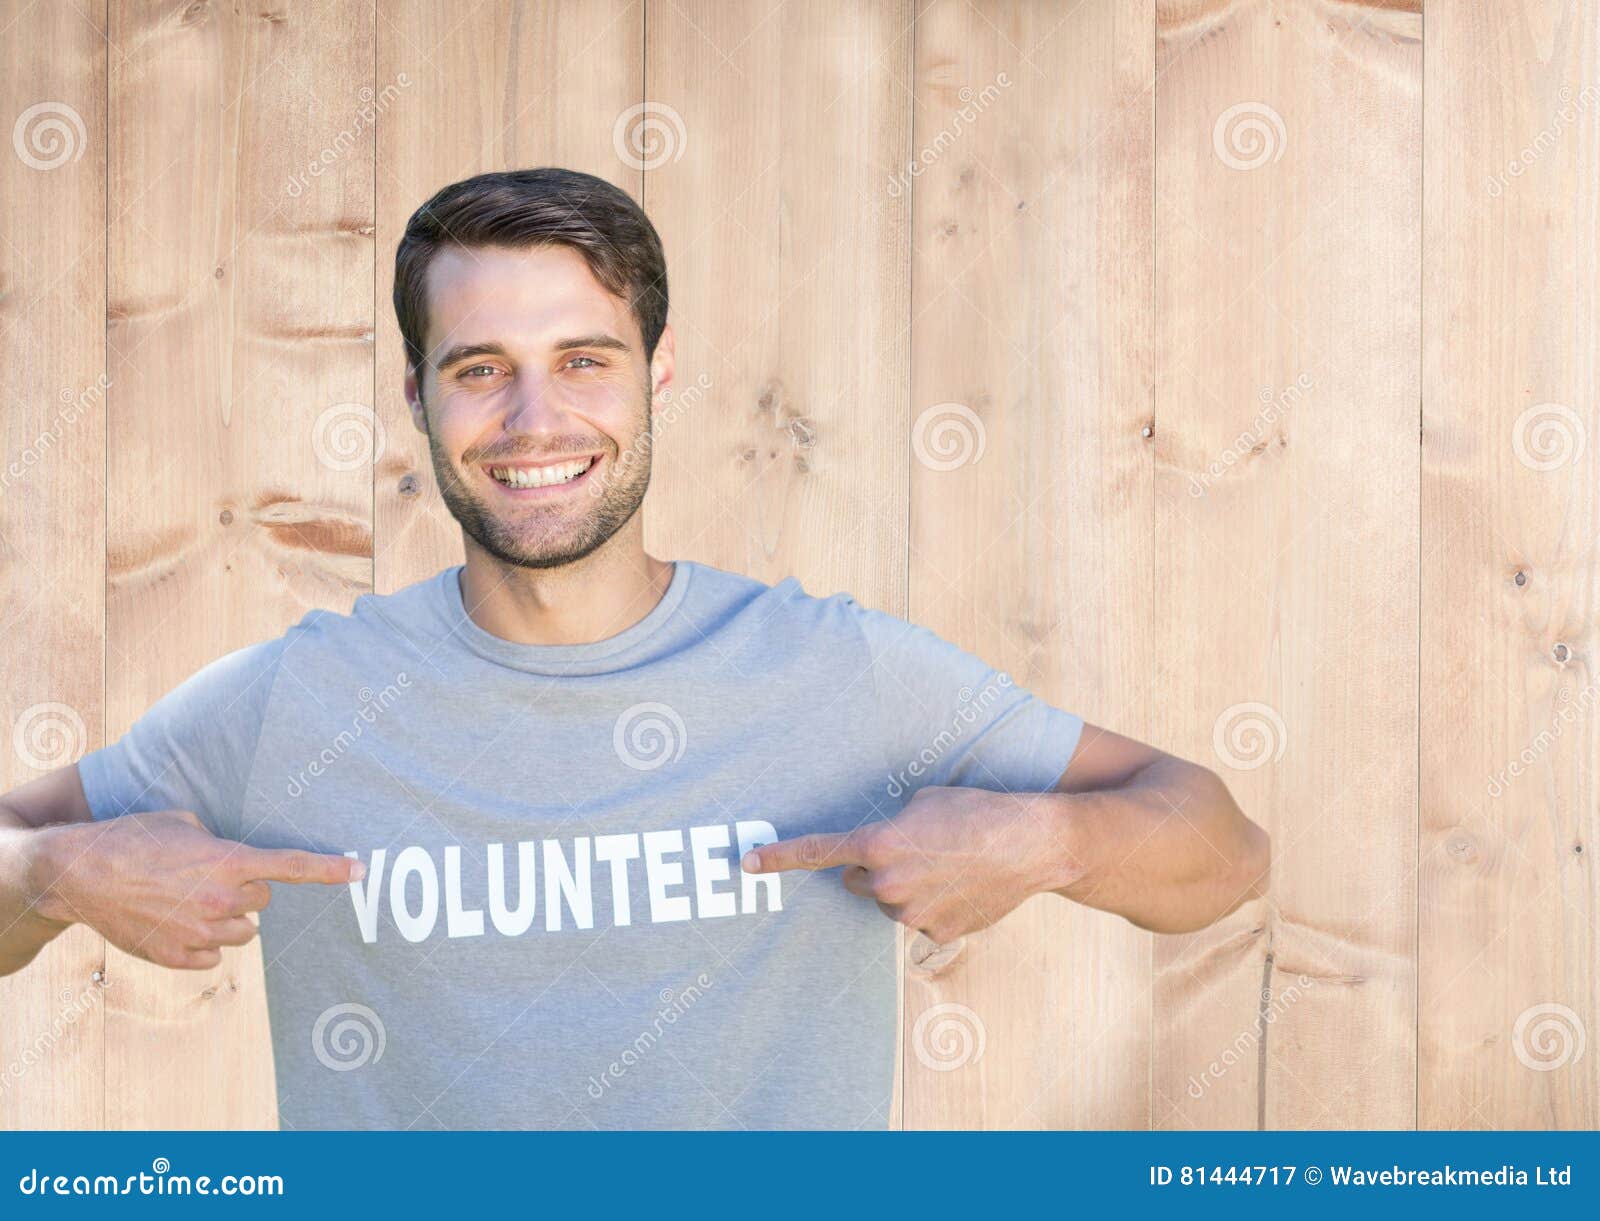 Hombre sonriente que señala en el título voluntario en su camiseta. Retrato de los hombres sonrientes que señalan en el título voluntario en su camiseta contra fondo de madera